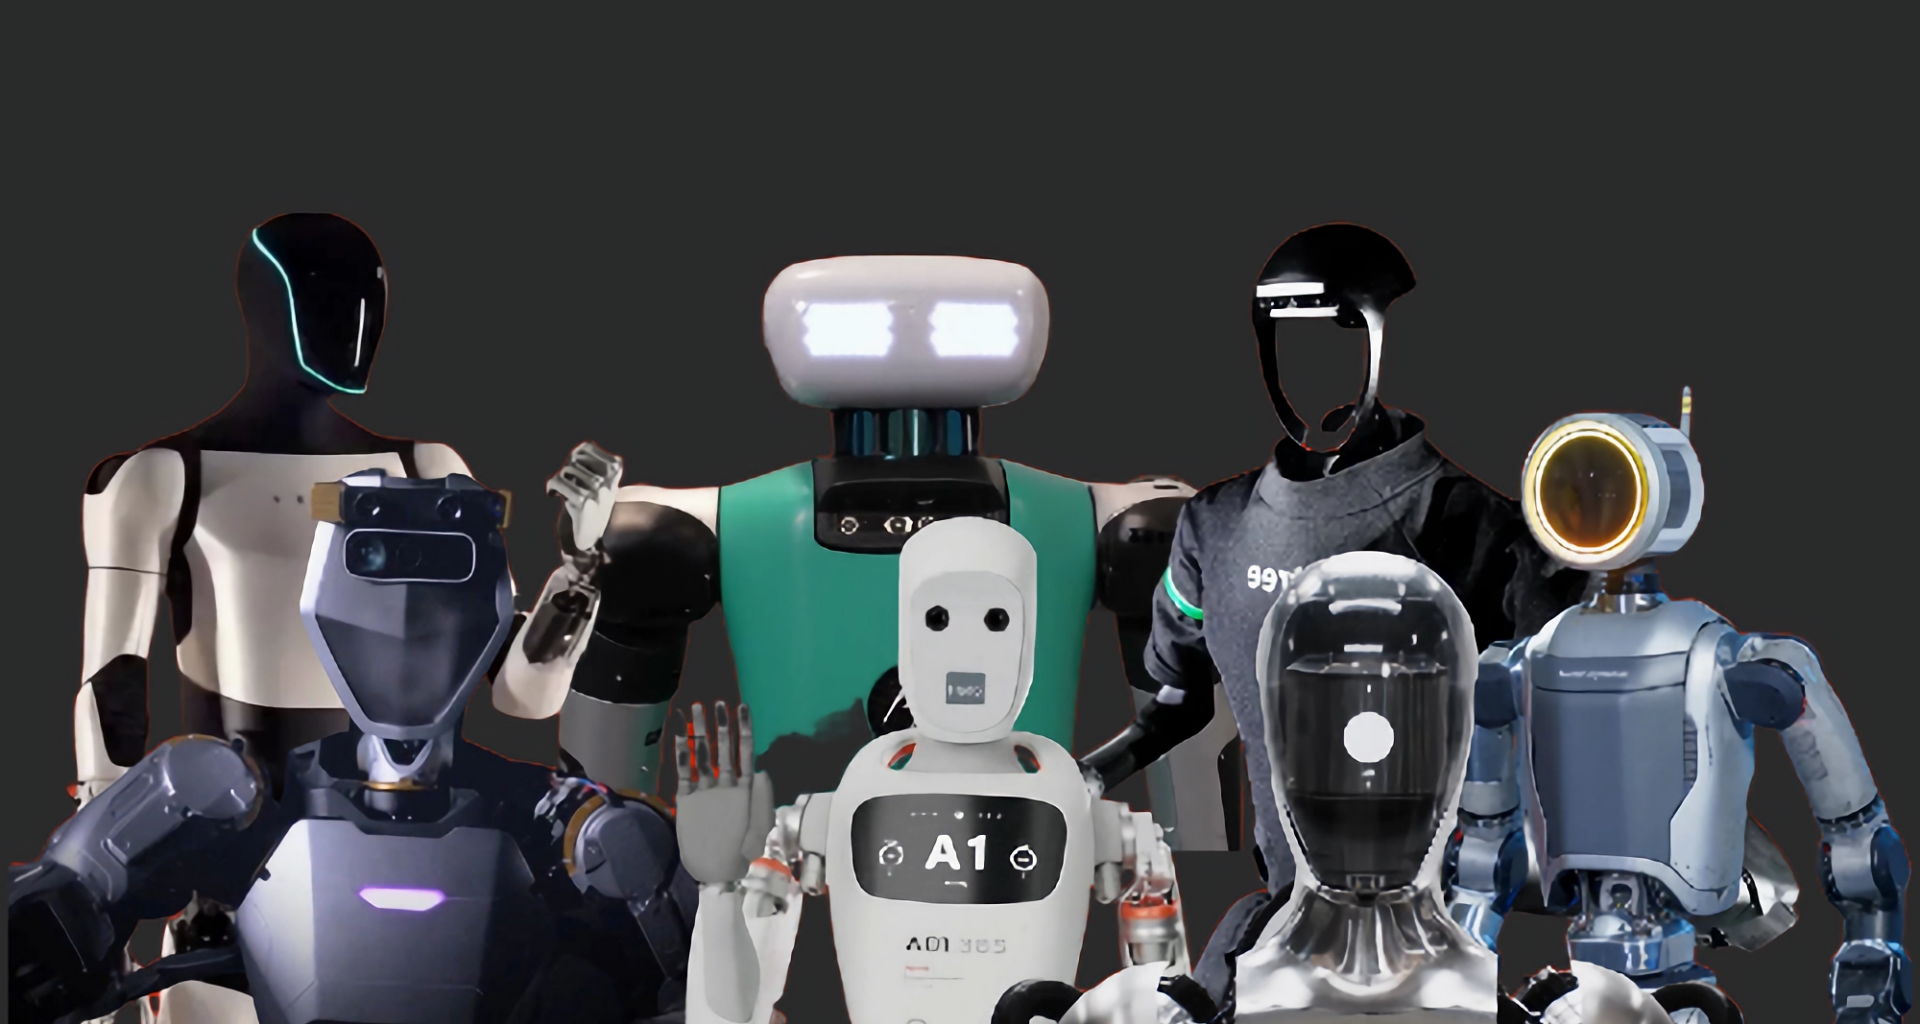 Melhores da semana: 10 robôs humanoides impressionantes, show da madonna no rio e mais!. Liberação de emuladores no iphone, a nova bicicleta elétrica sudu a2 e outras notícias. Confira agora!